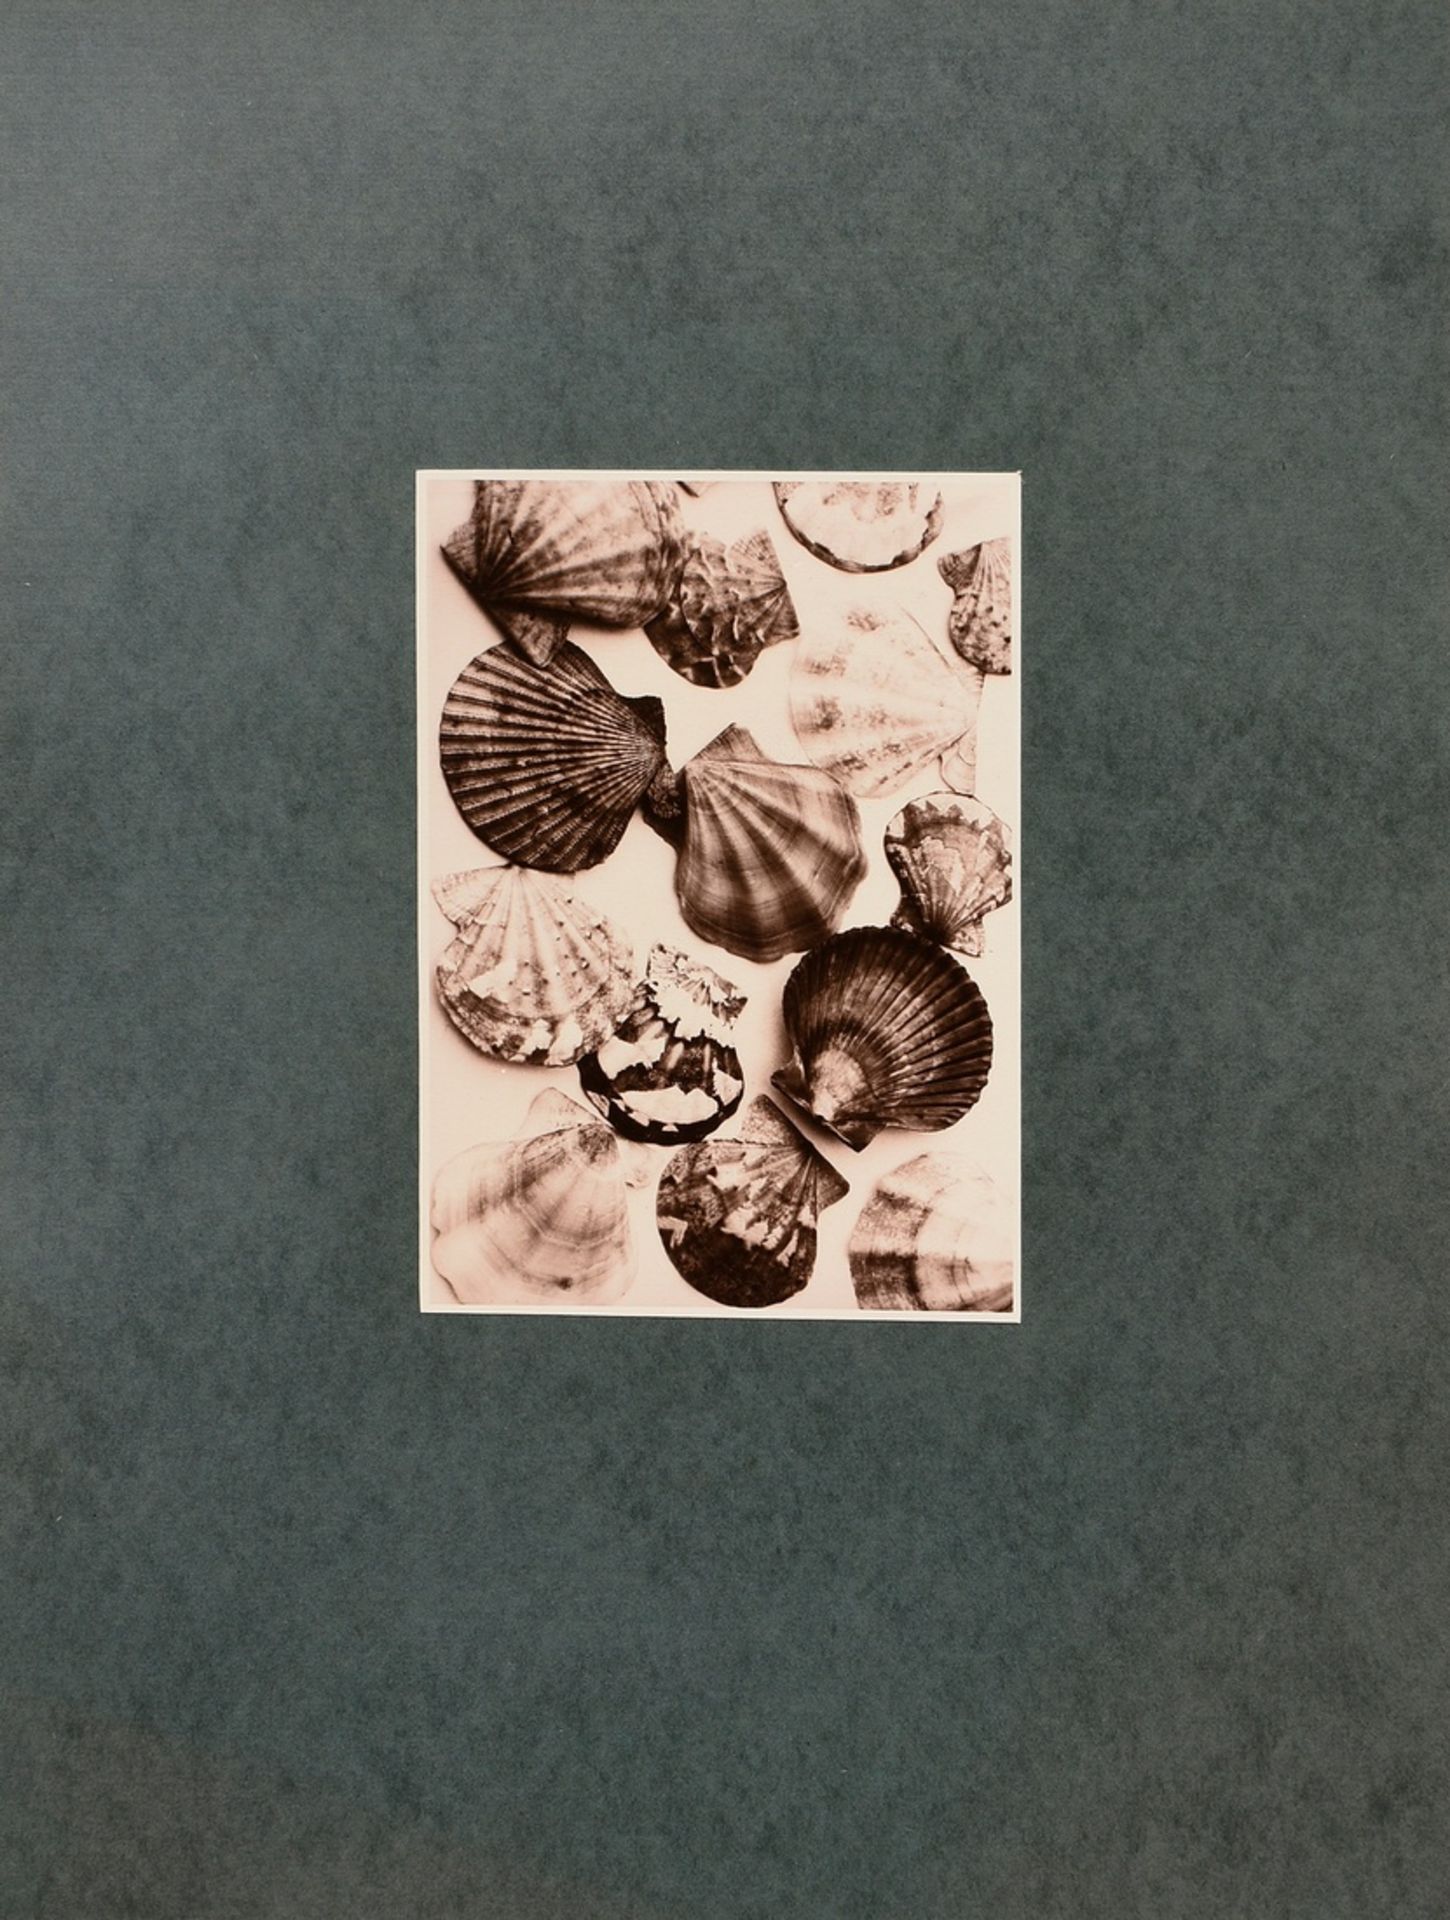 Koch, Fred (1904-1947) "Muscheln", Fotografie auf Karton montiert, verso bez. und gestempelt, Nr. 3 - Bild 2 aus 3